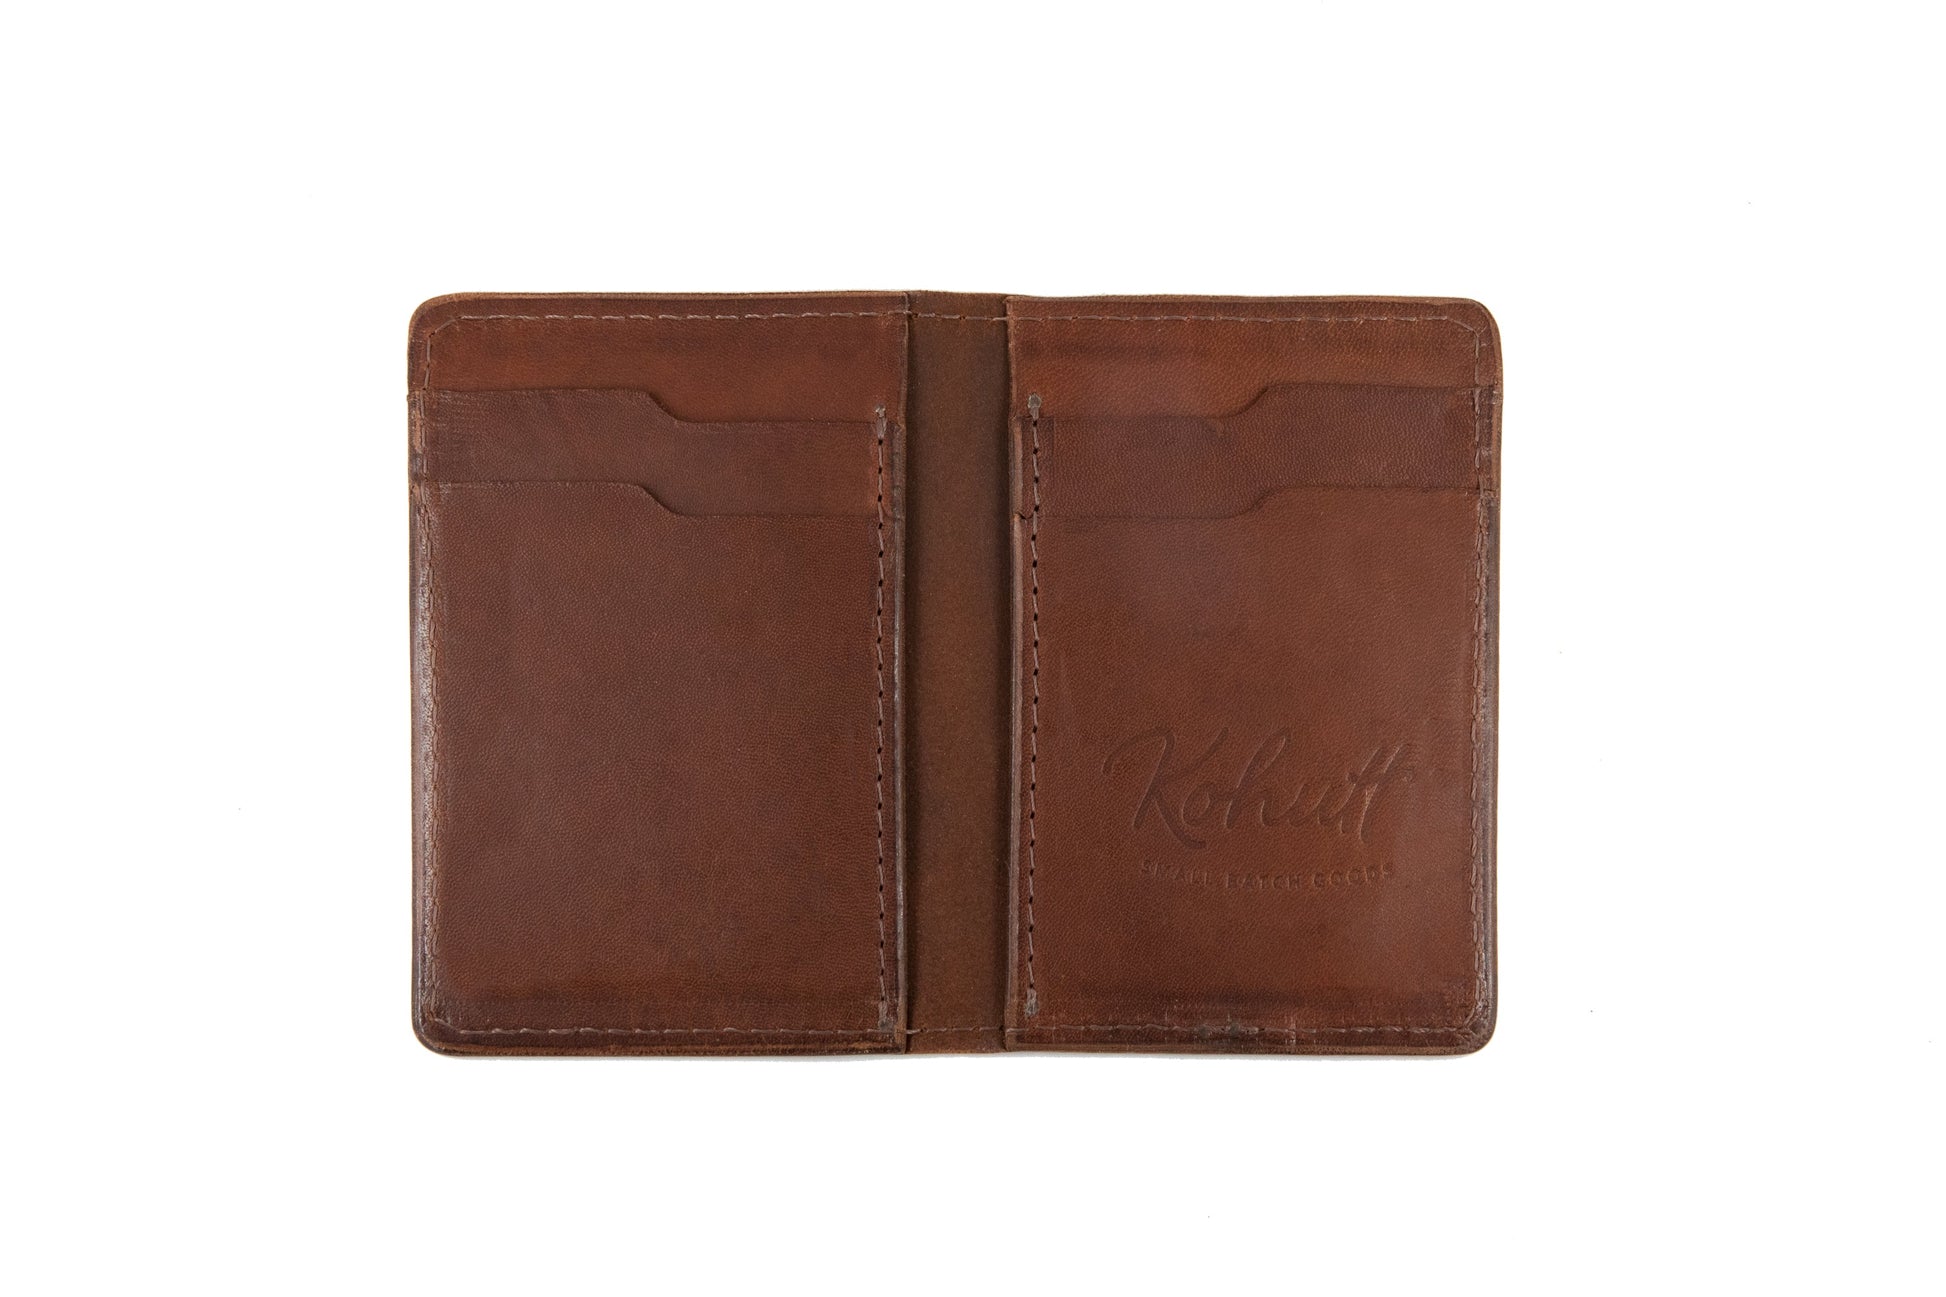 Pre-cut Kangaroo leather DIY vertical bifold slim wallet - Kohutt™ - made in Tasmania